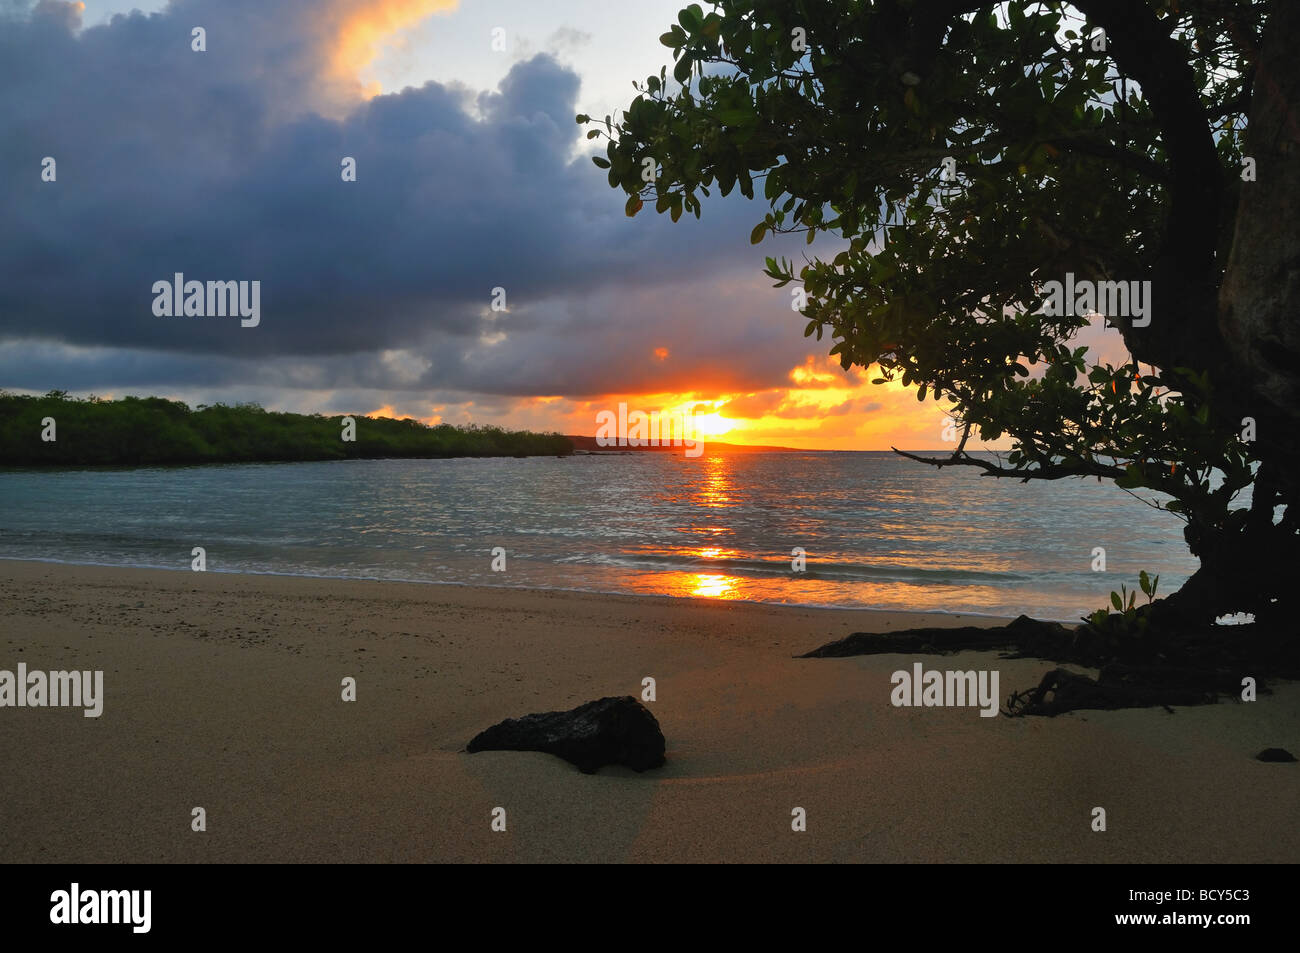 Il sole sorge dall'Oceano Pacifico, colata la mattina prima luce su una mangrovia nelle Galapagos Isola di Santa Fe. Foto Stock